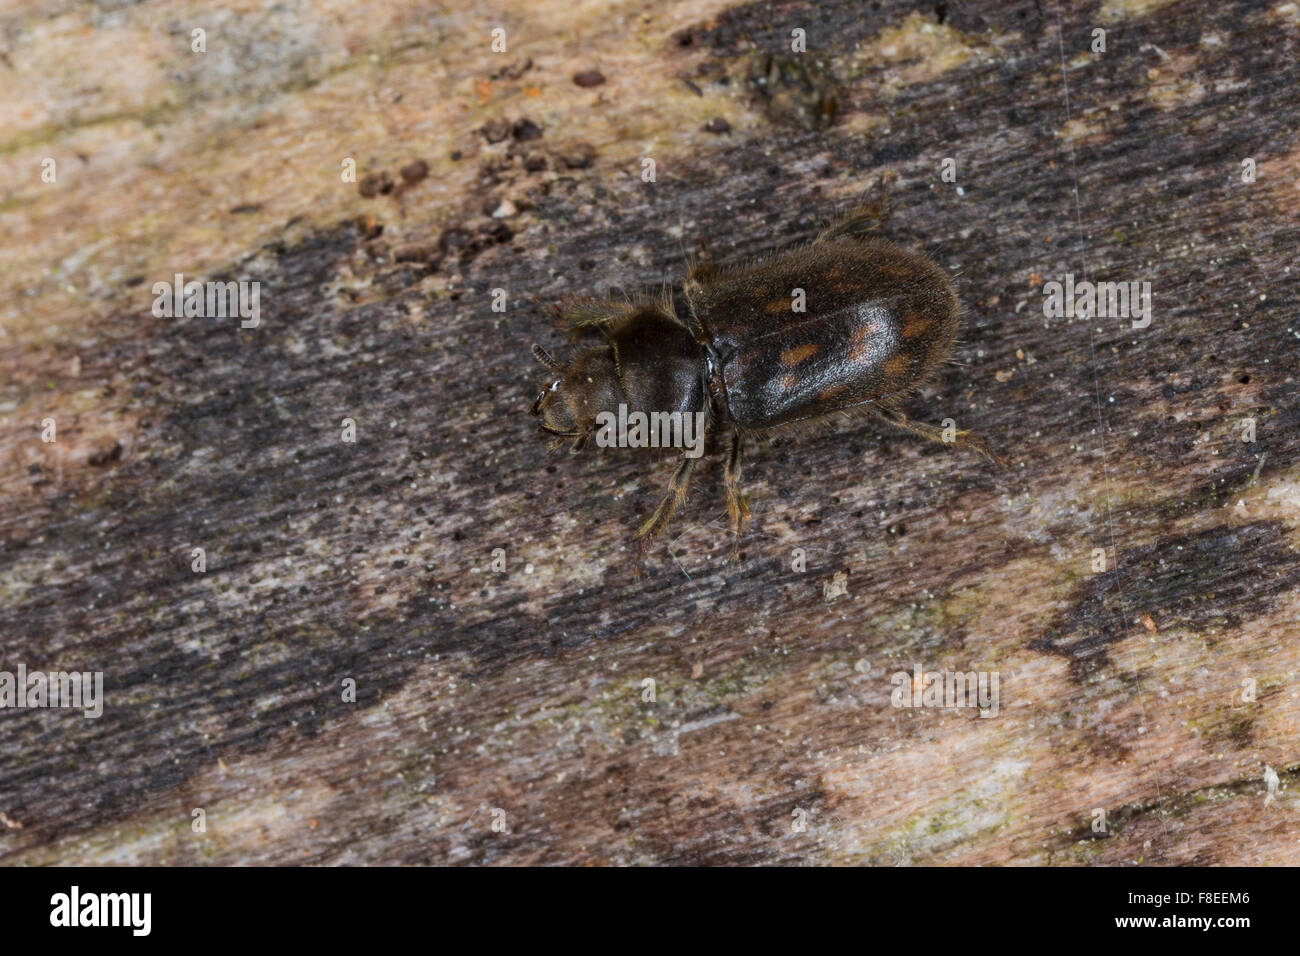 Variegated mud-loving beetle, Sägekäfer, Heterocerus spec., Heteroceridae, variegated mud-loving beetles Stock Photo